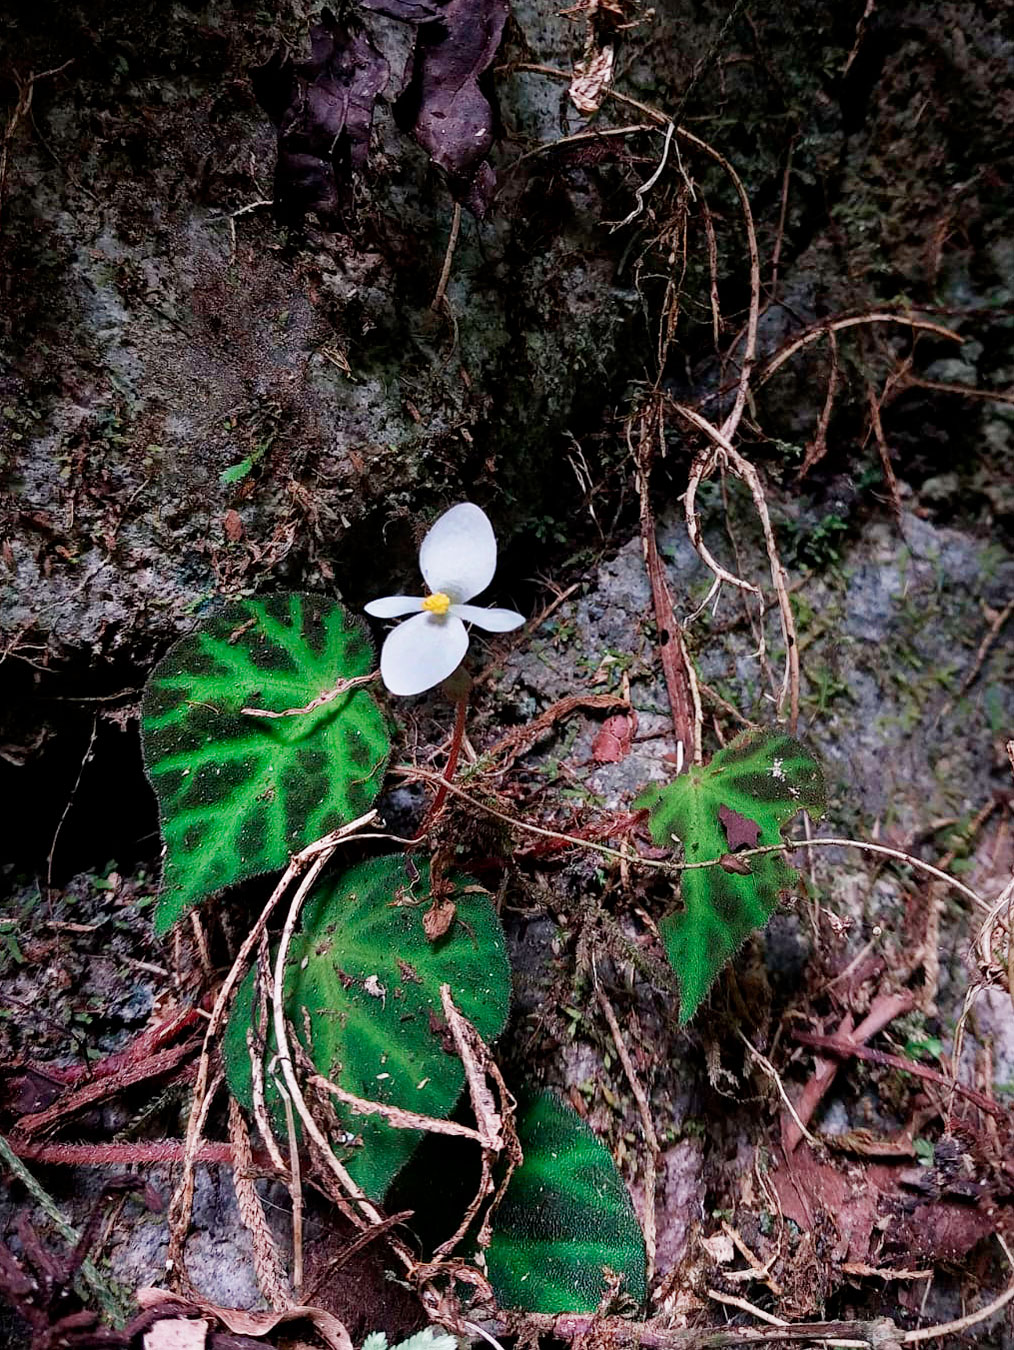 Begonia turrialbae, especie endémica de Costa Rica